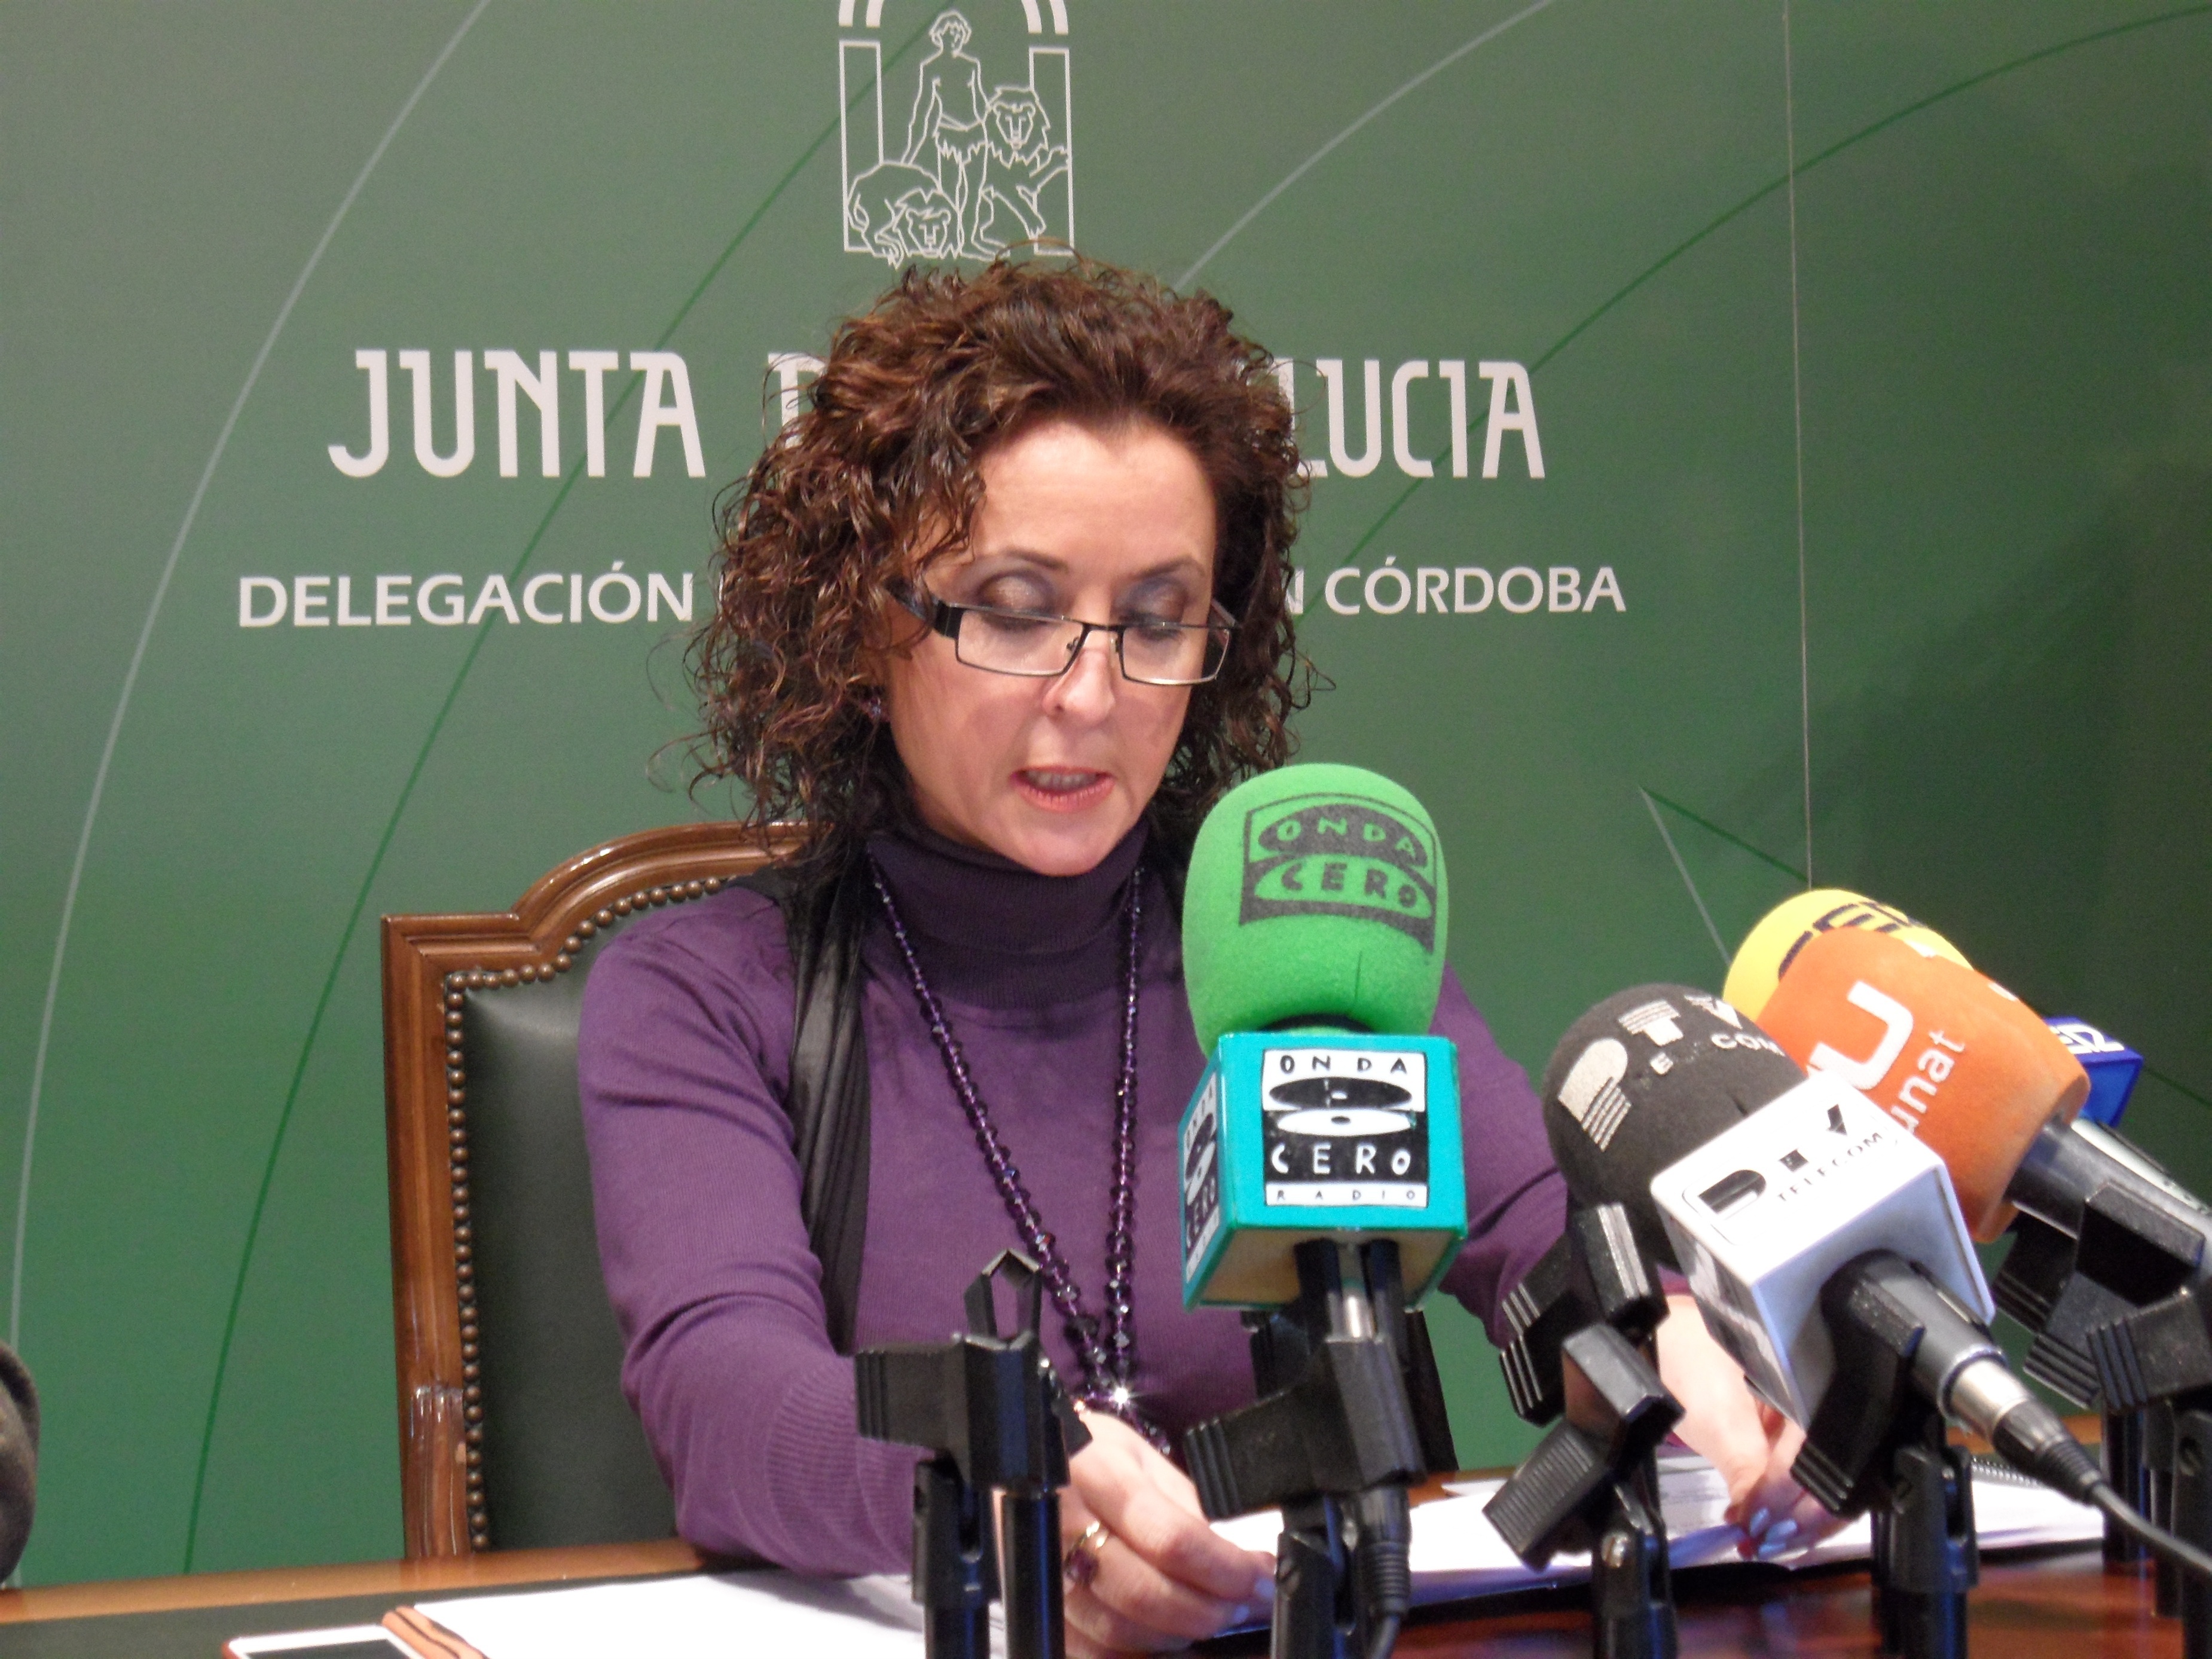 La Junta destina más de 46 millones de euros en 5 años para combatir la pobreza y exclusión de 20.000 familias